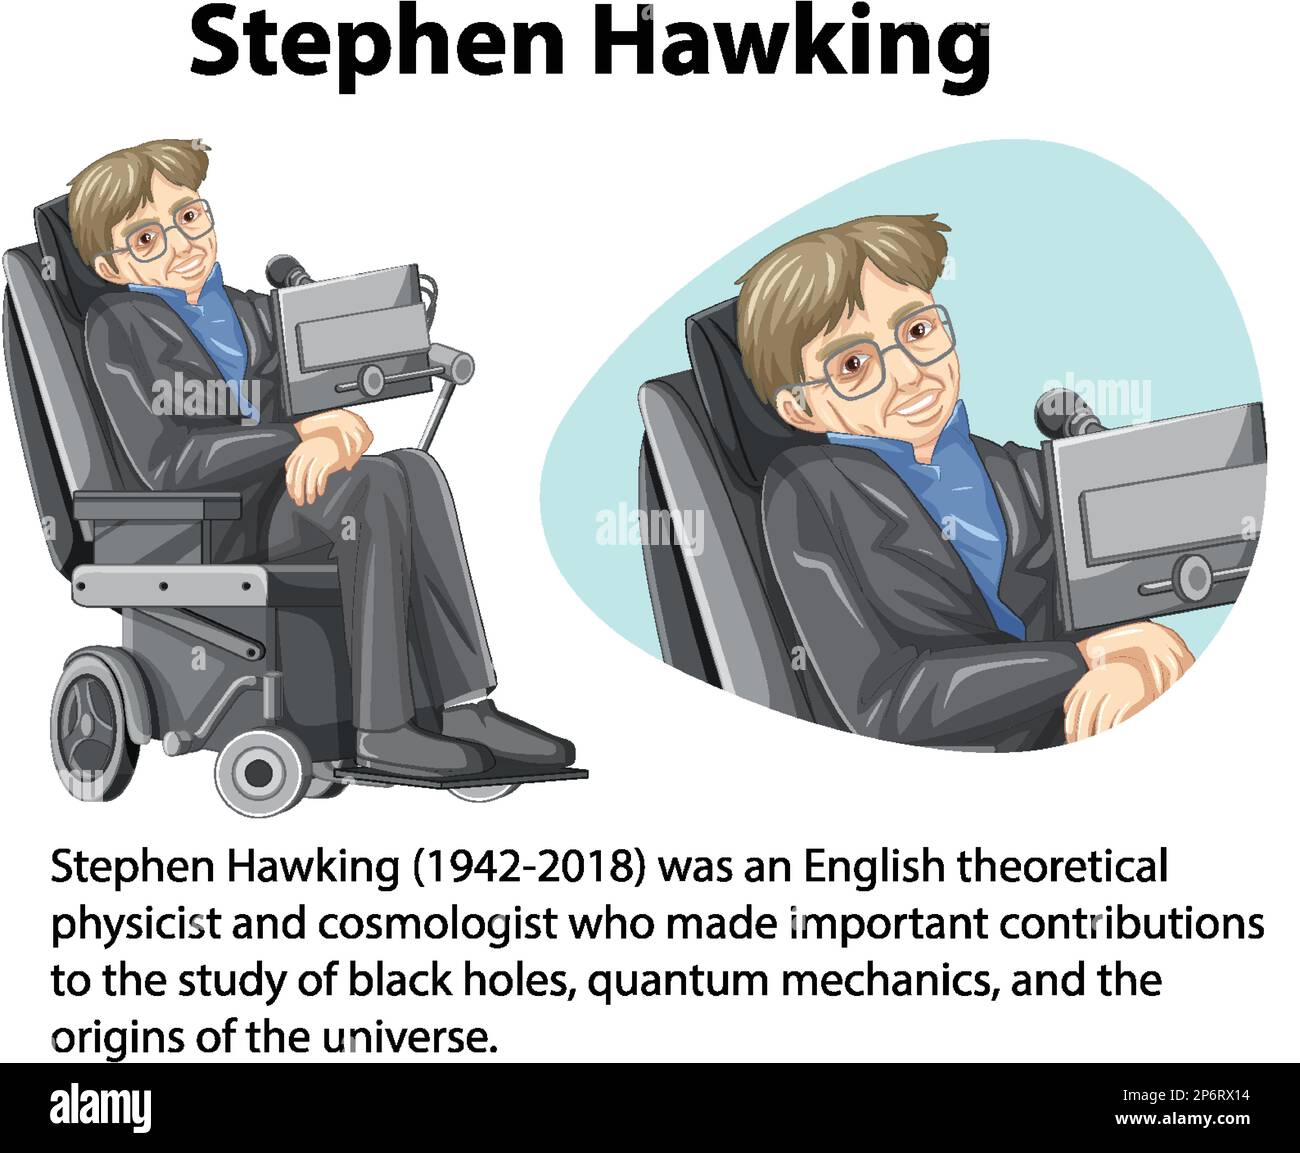 Biografia informativa dell'illustrazione di Stephen Hawking Illustrazione Vettoriale